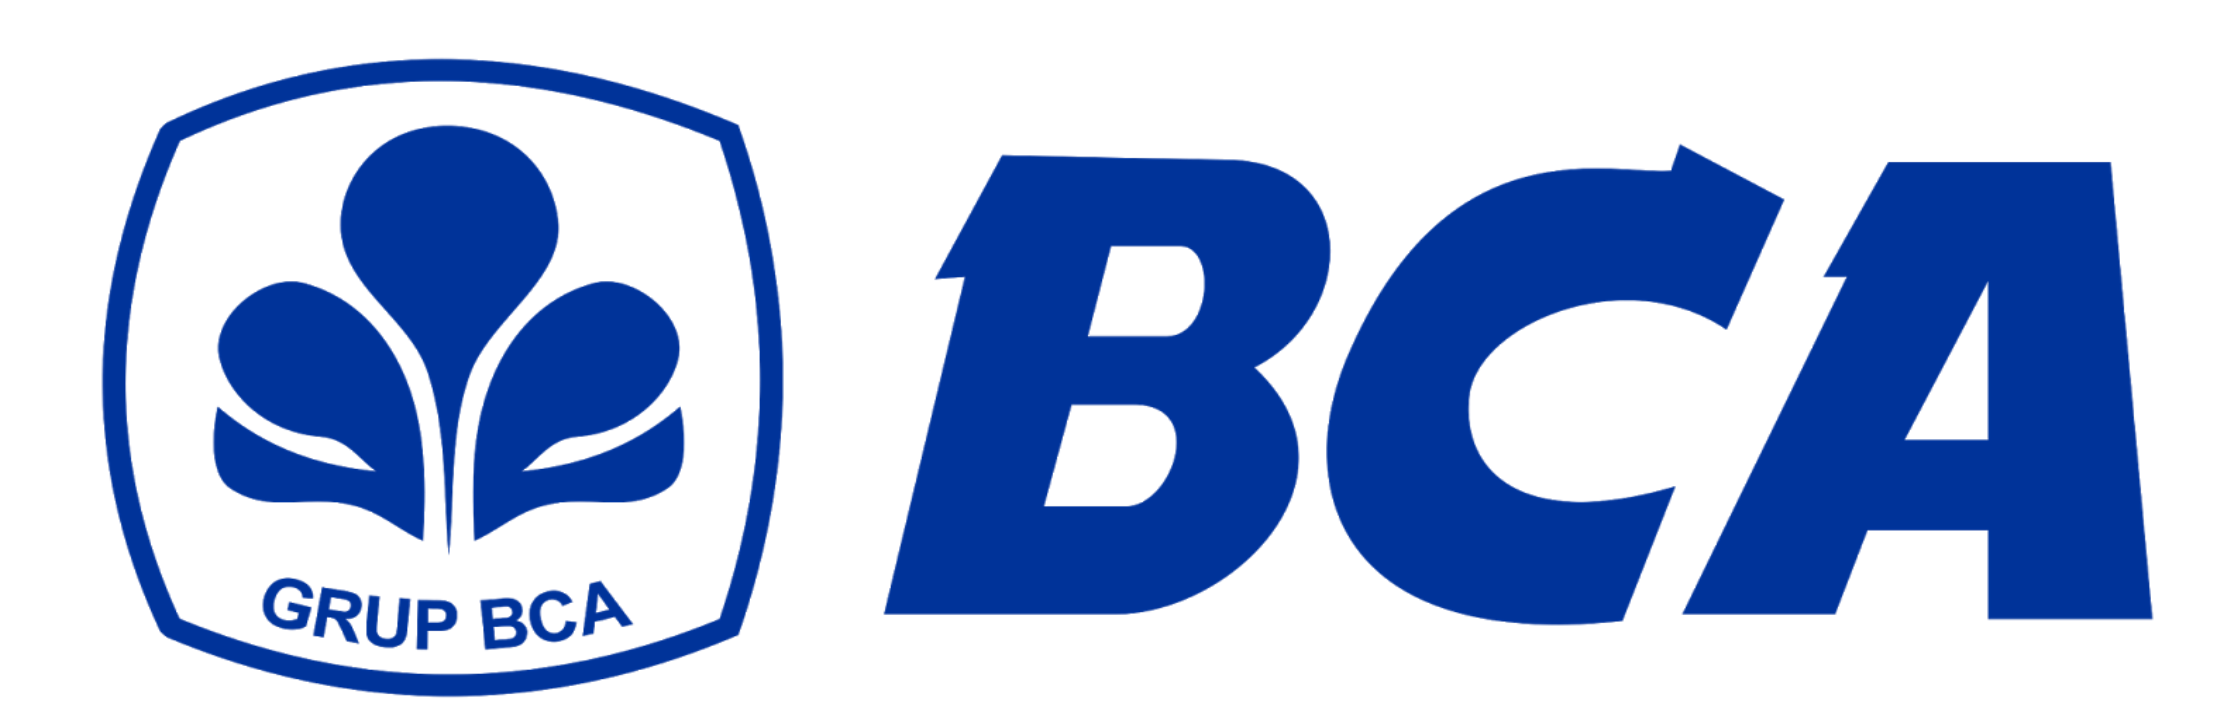 Logo-BCA-PNG